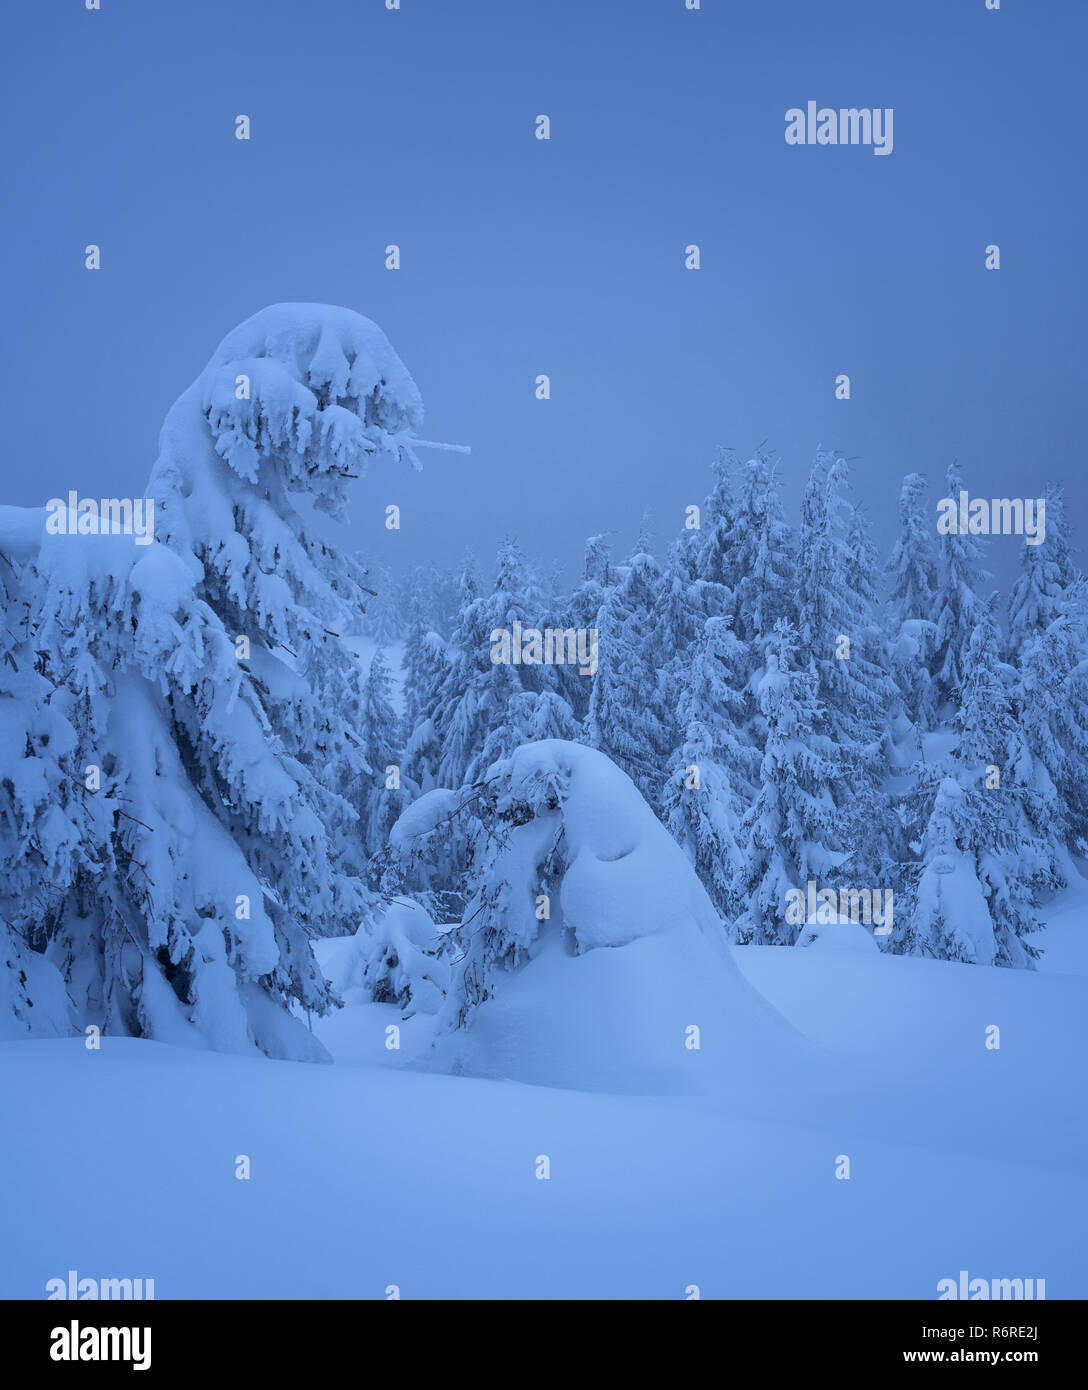 Vue d'hiver avec neige dans la pessière. Les arbres couverts de neige. Scène en bleu sombre Banque D'Images